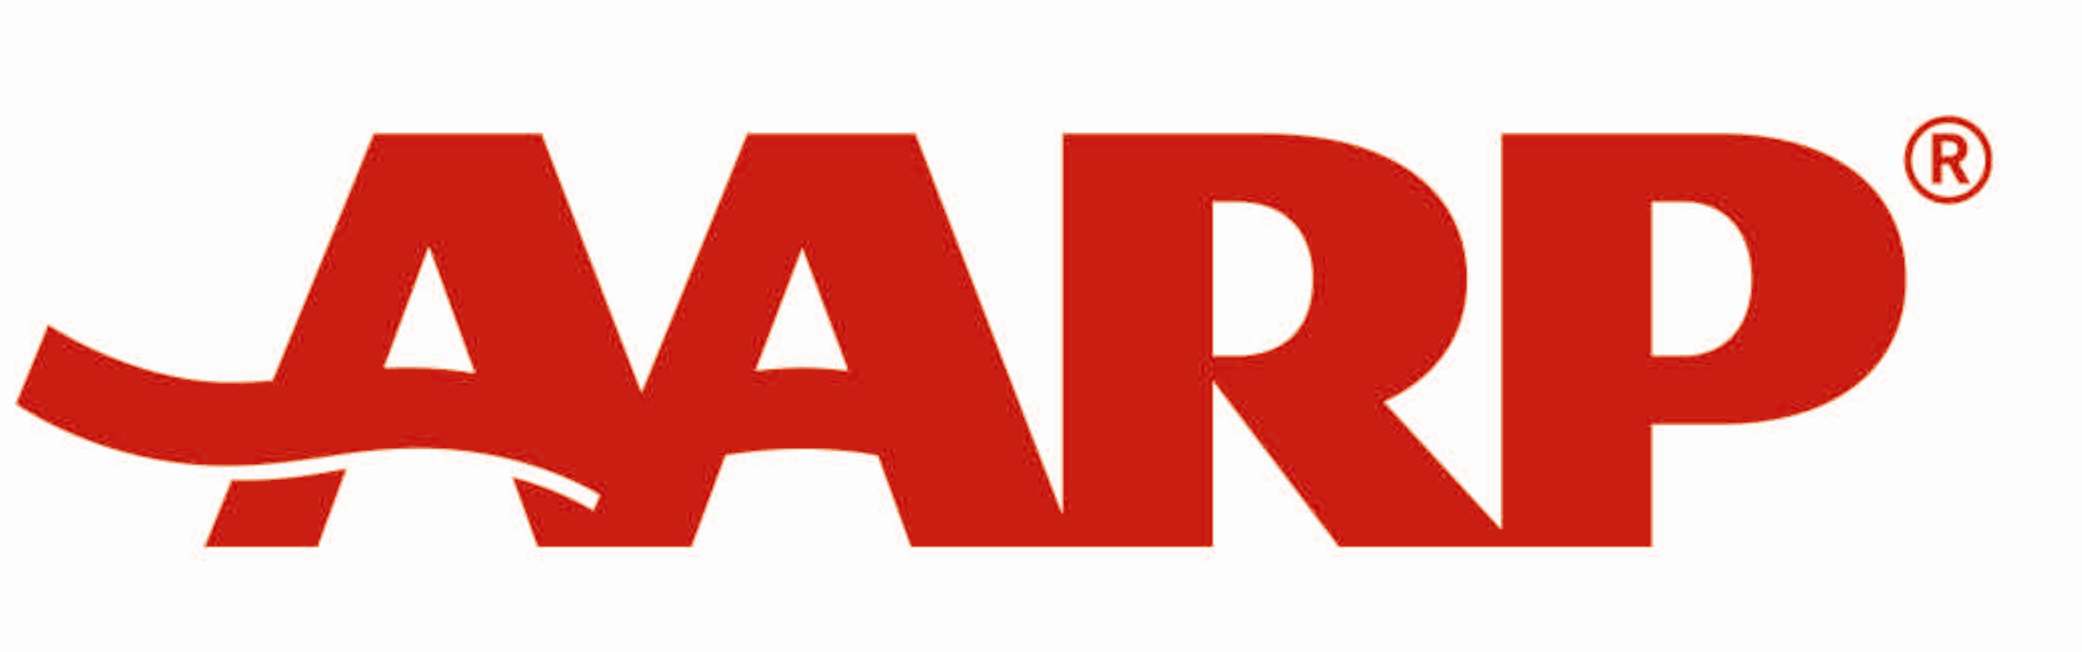 AARP Logo - Miller Outdoor Theatre | AARP-logo